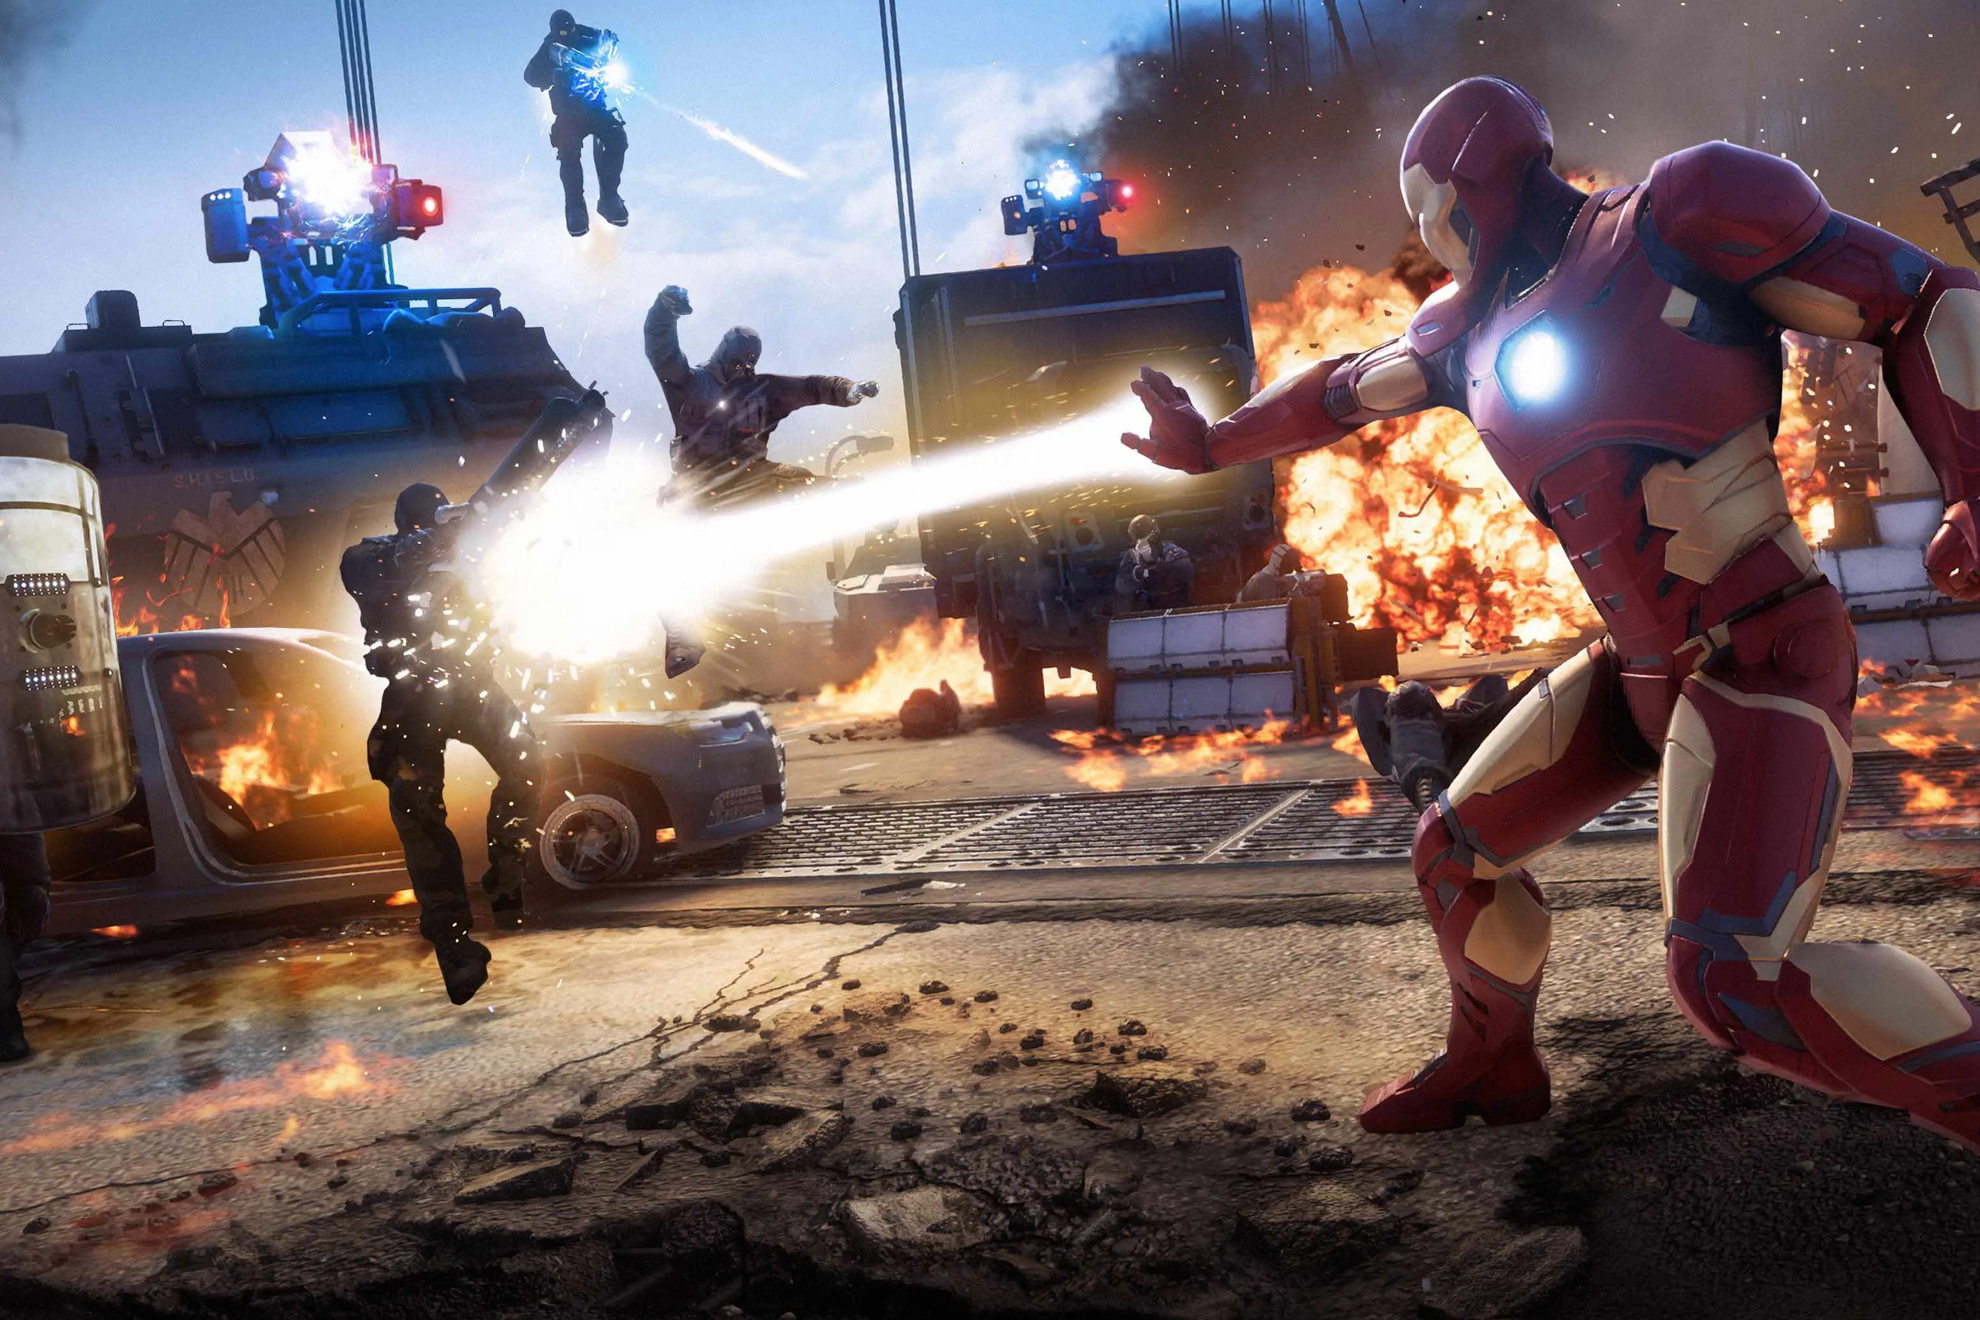 Imagen de Marvels Avengers no representativa del juego.